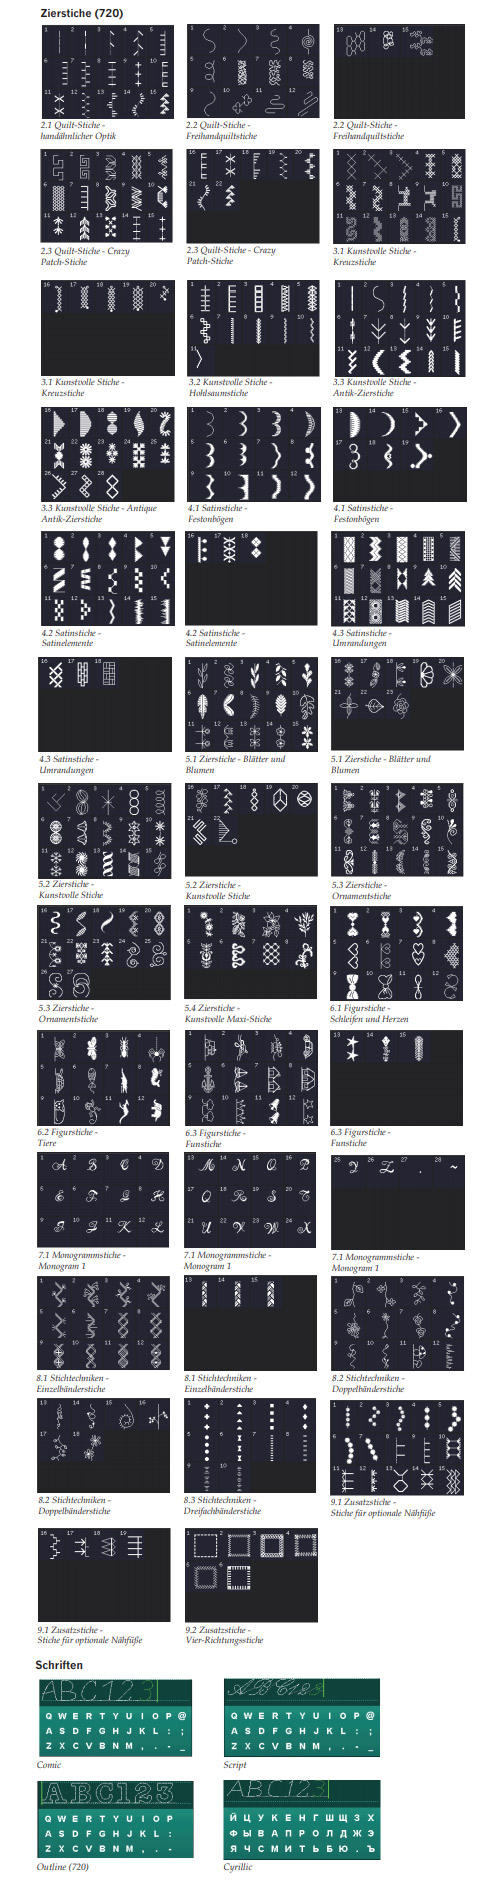 Pfaff quilt expression 720 Stichübersicht Zierstiche, Schriften